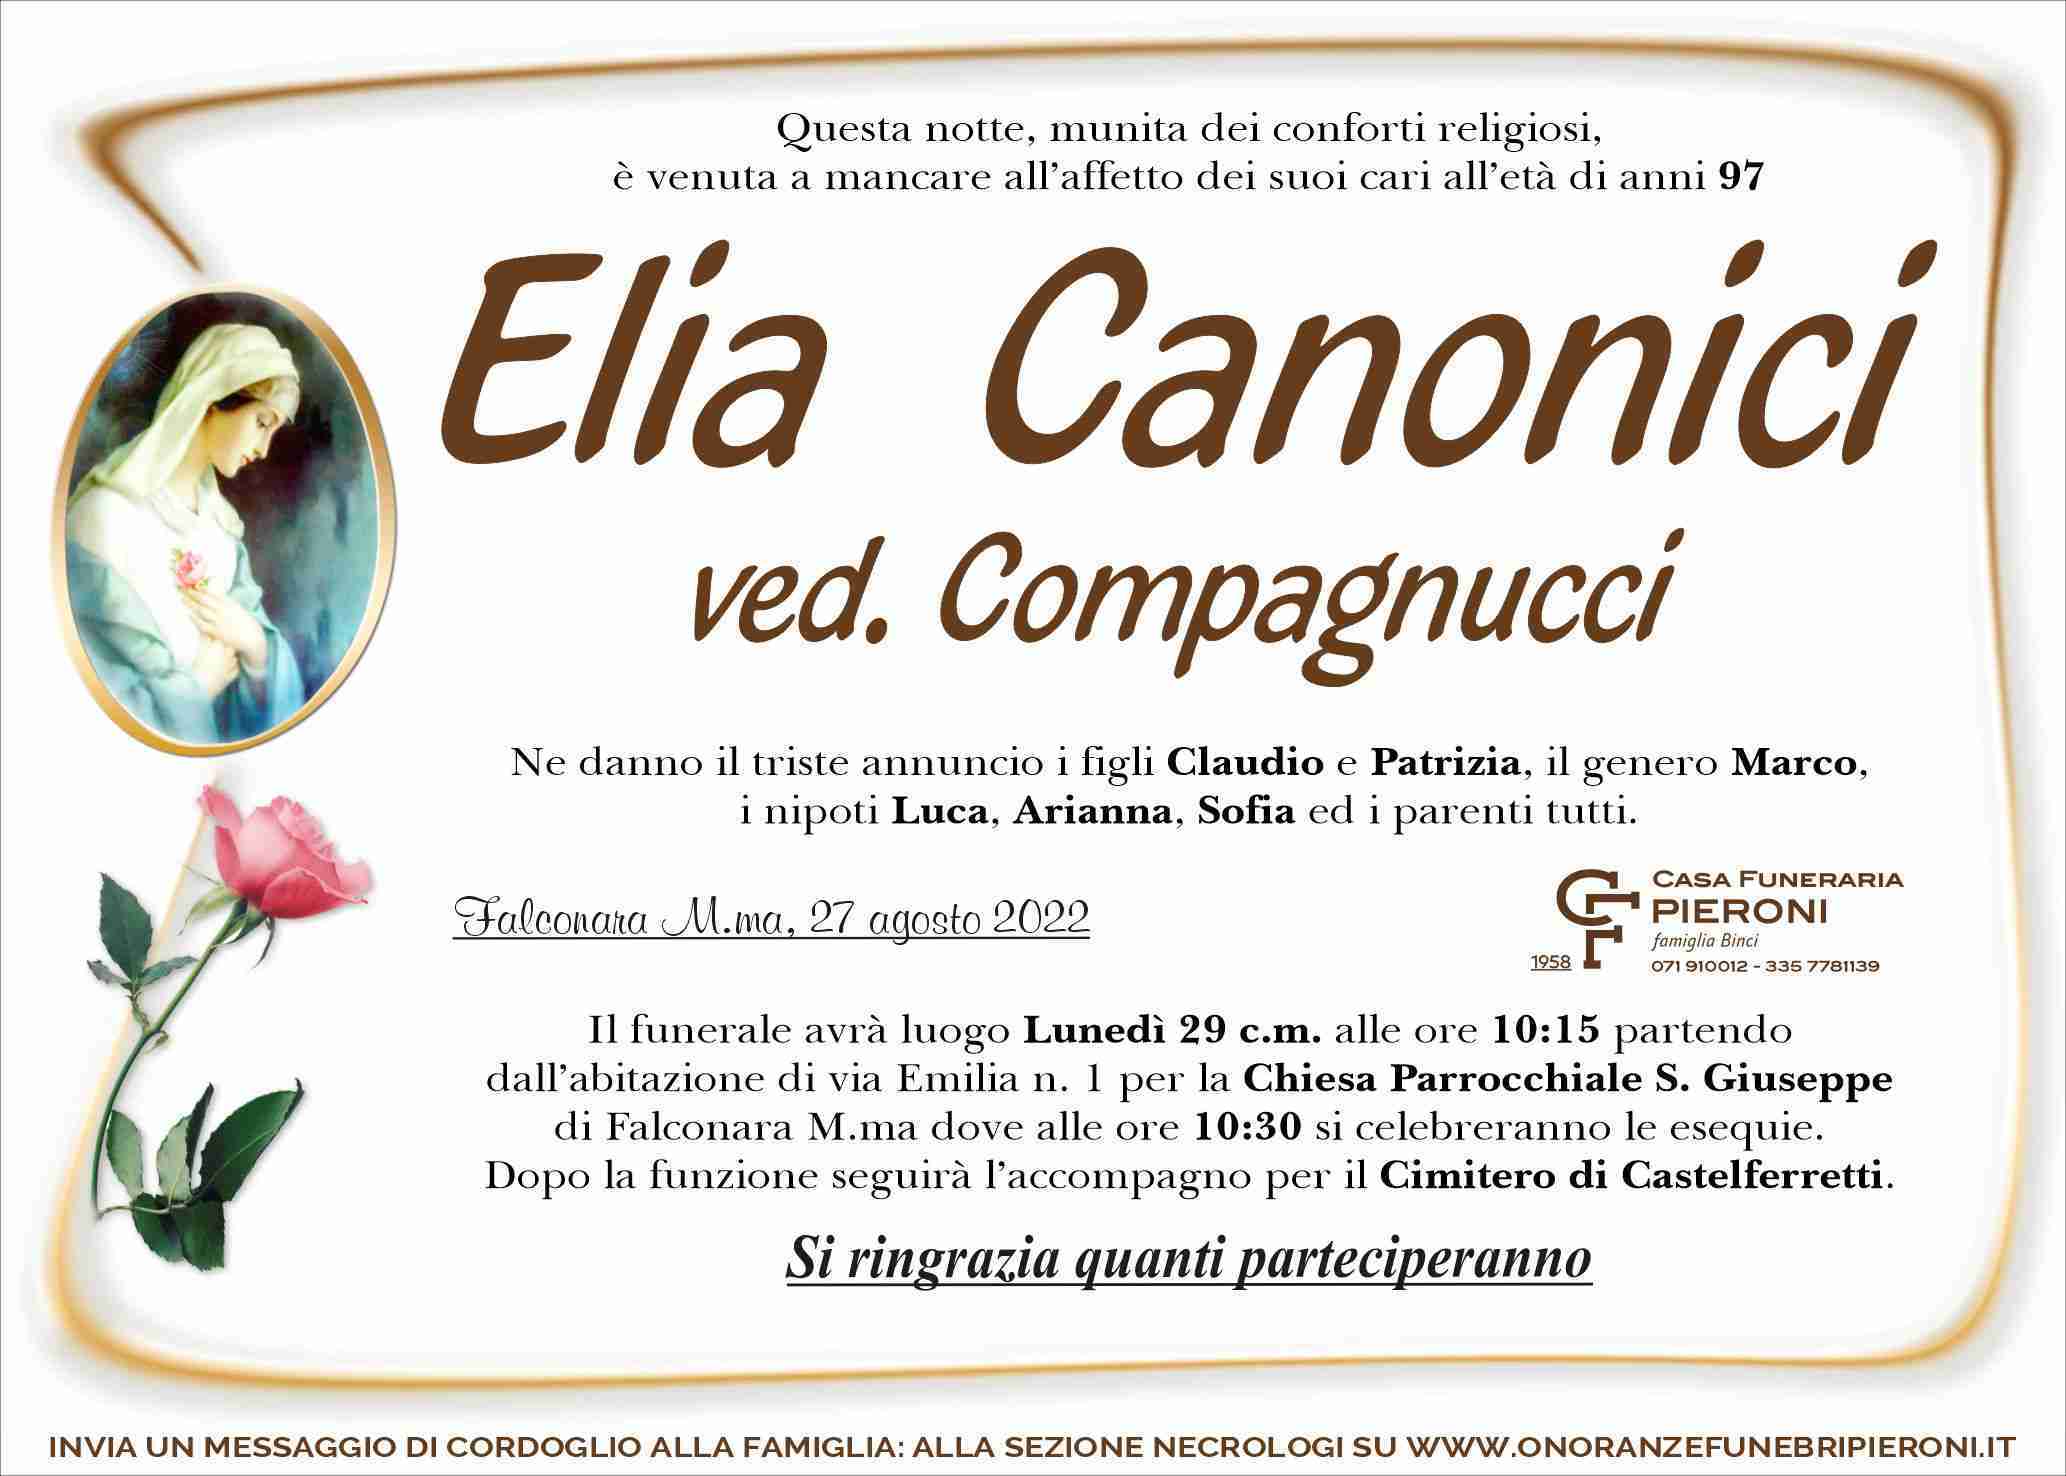 Elia Canonici